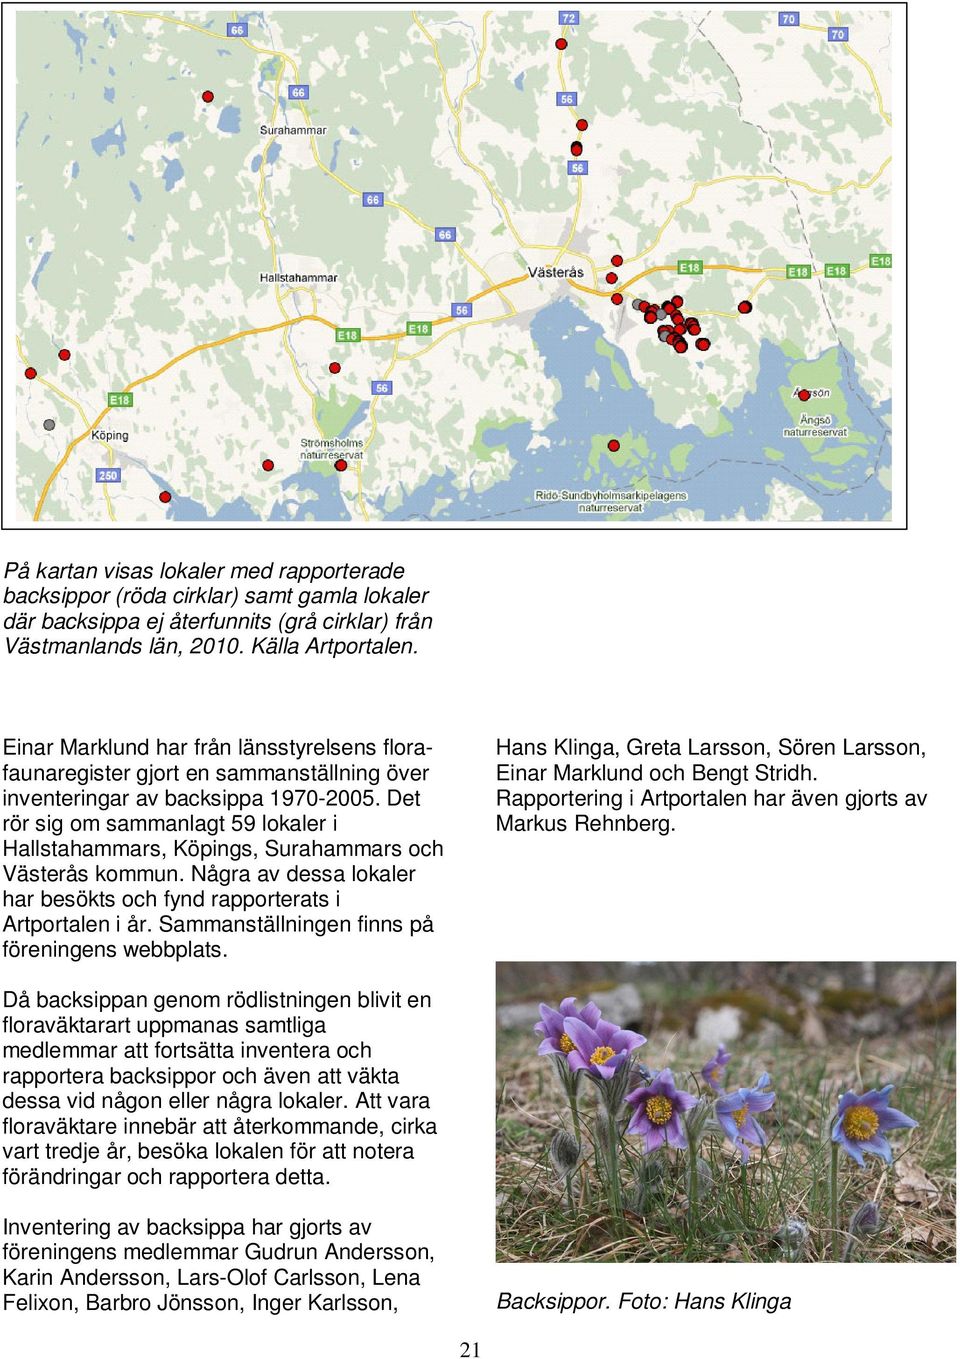 Det rör sig om sammanlagt 59 lokaler i Hallstahammars, Köpings, Surahammars och Västerås kommun. Några av dessa lokaler har besökts och fynd rapporterats i Artportalen i år.